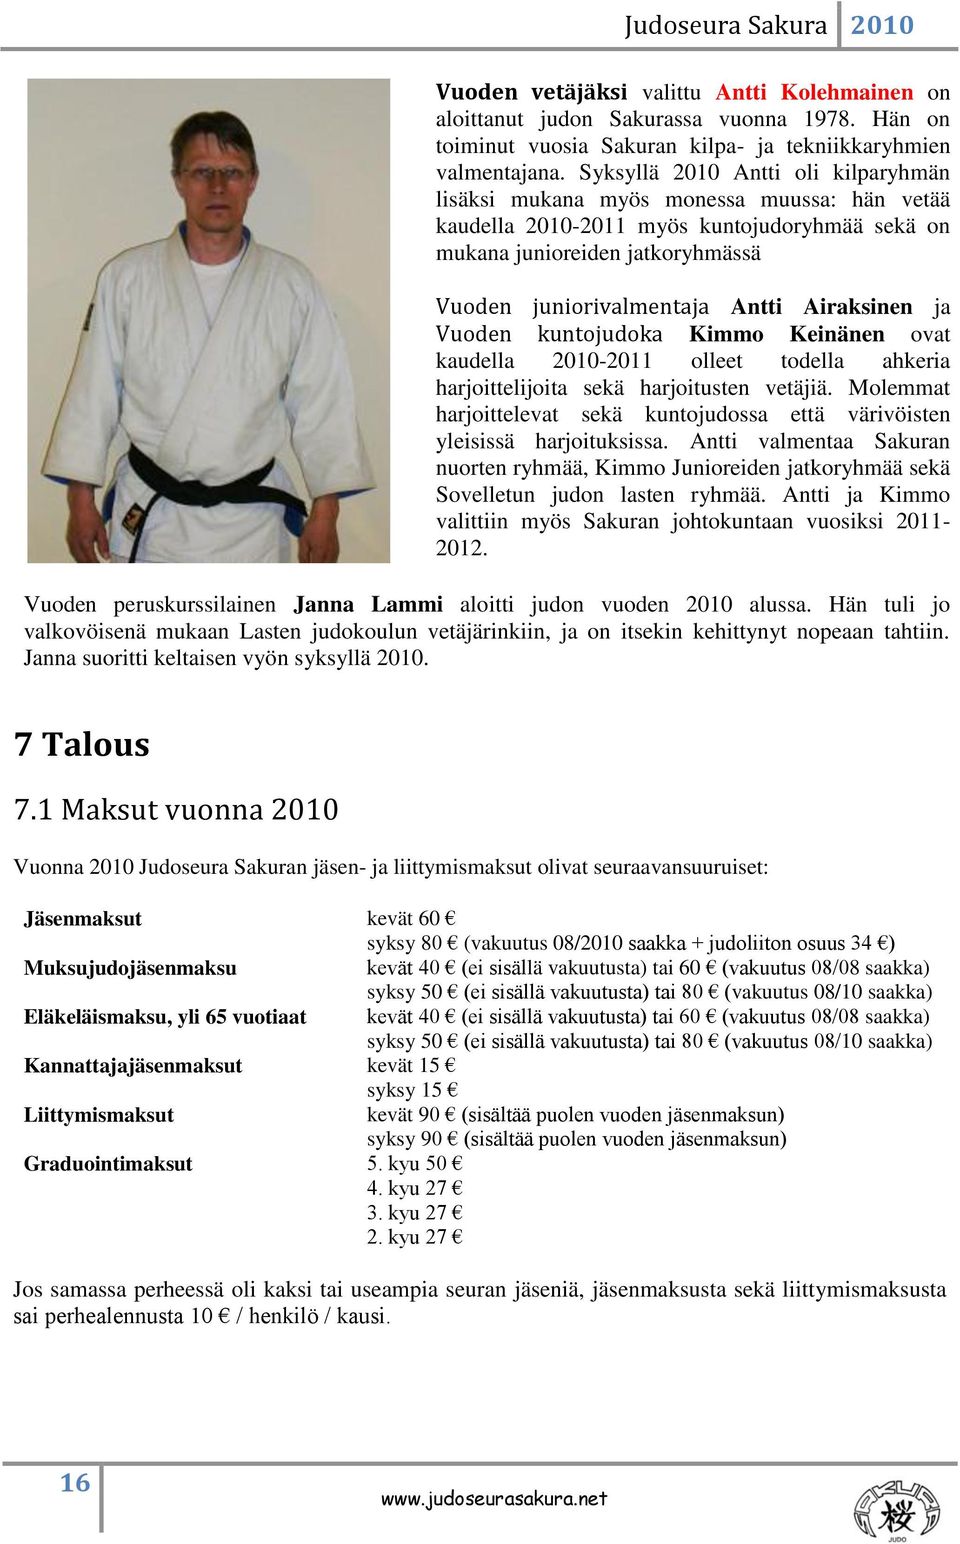 Airaksinen ja Vuoden kuntojudoka Kimmo Keinänen ovat kaudella 2010-2011 olleet todella ahkeria harjoittelijoita sekä harjoitusten vetäjiä.